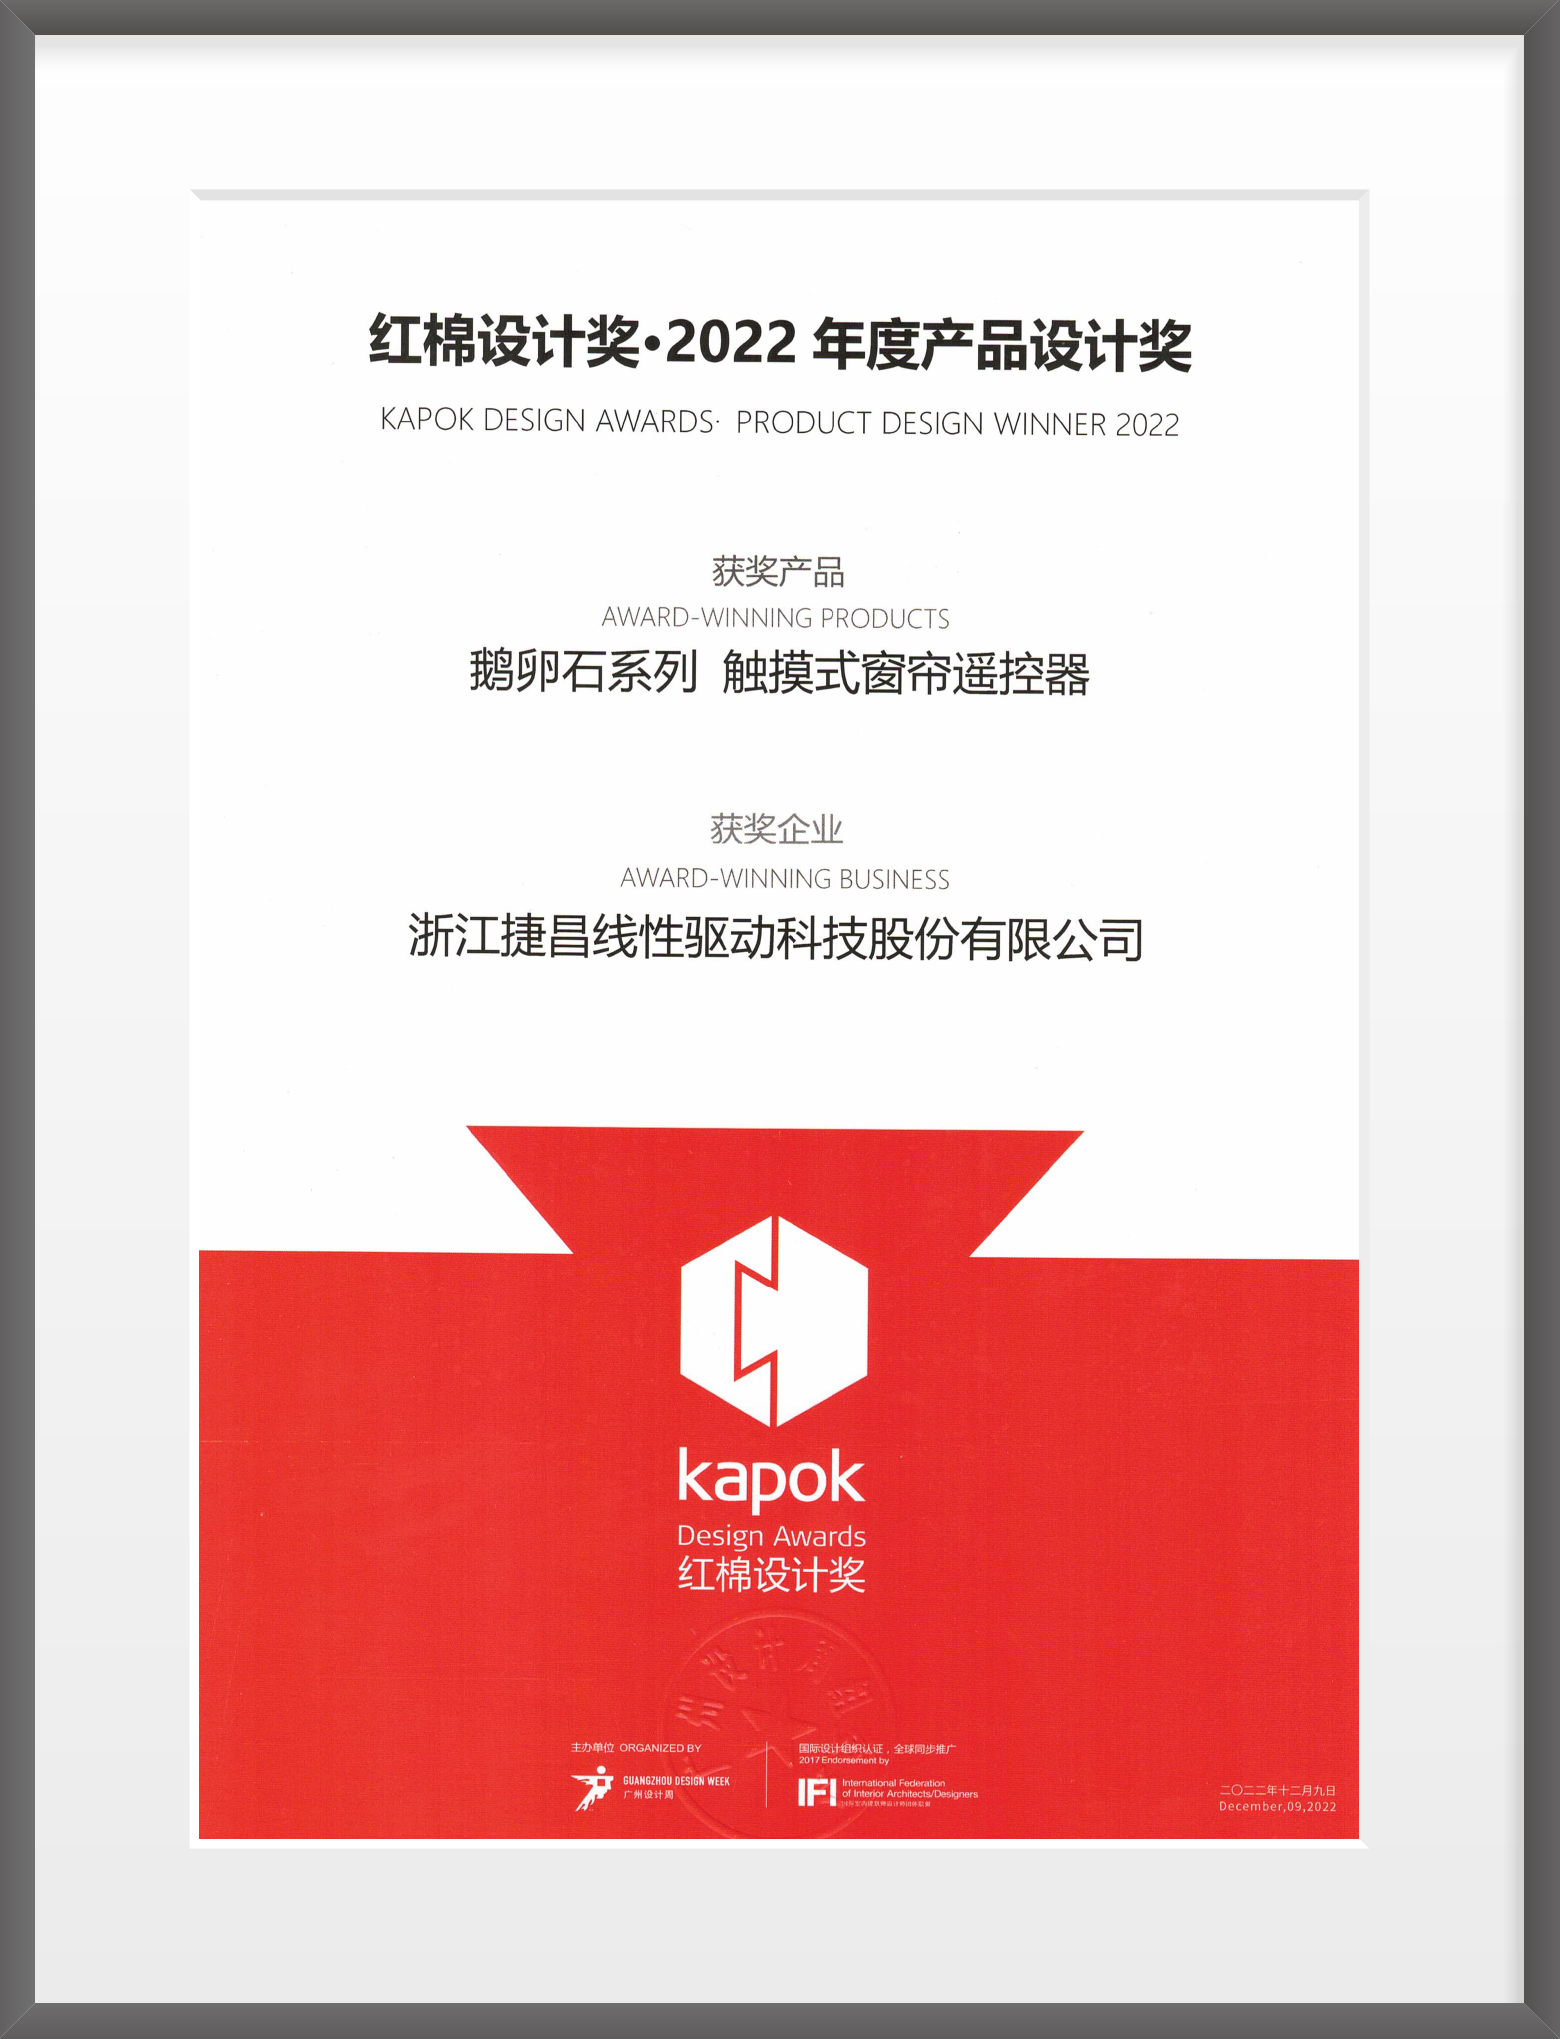 Kapok Design award